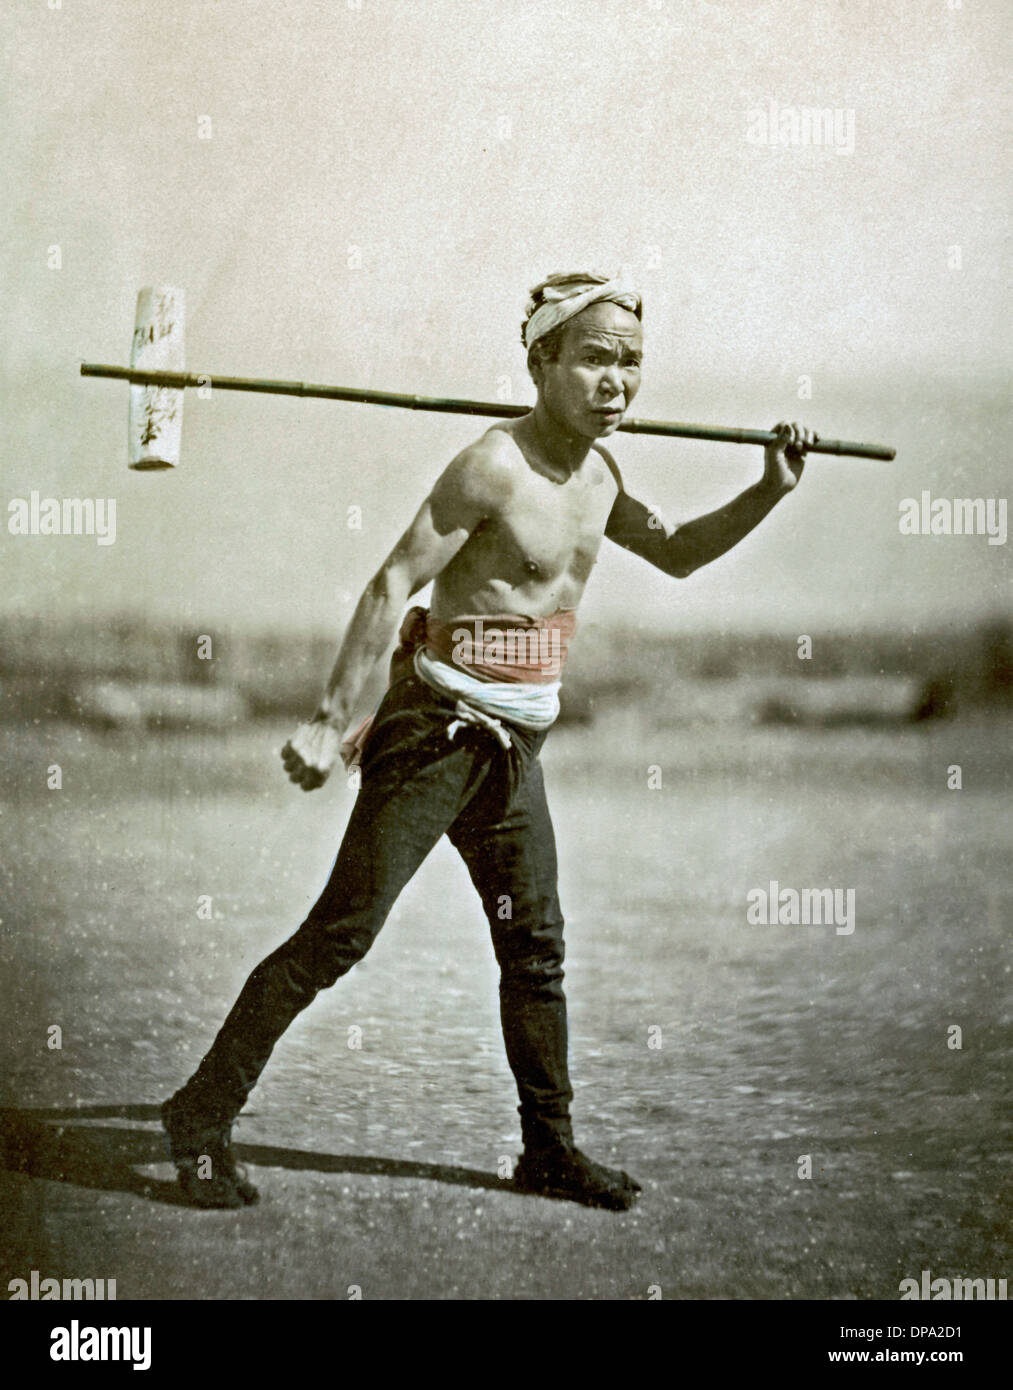 Post runner, Japón Foto de stock